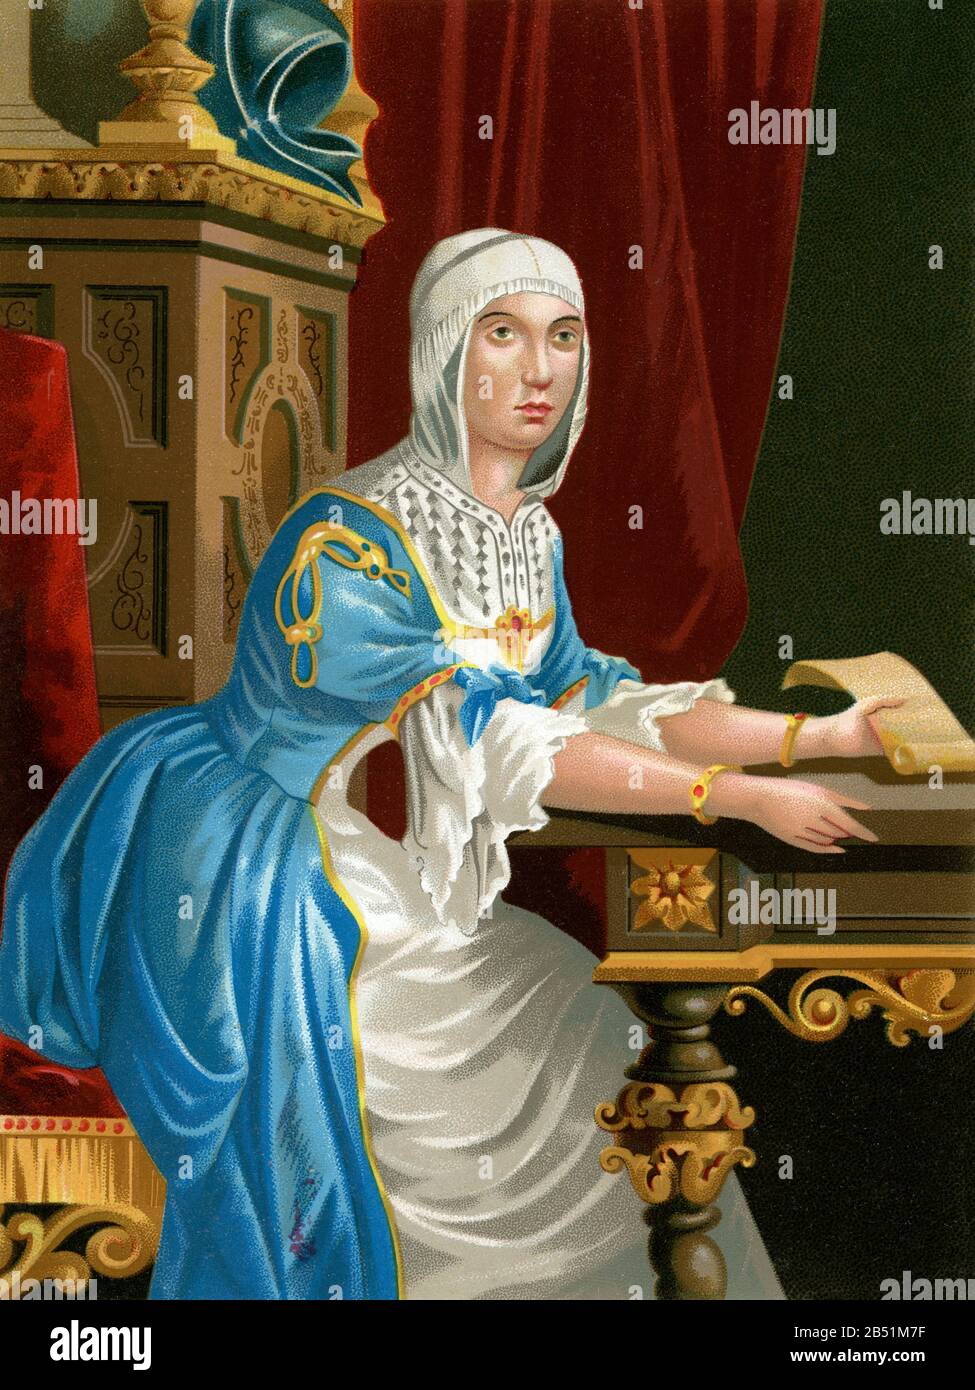 Old color lithography portrait. Isabella I of Castile (Madrigal de las Altas Torres 1451 - Medina del Campo 1504) was queen of Castile, queen consort Stock Photo